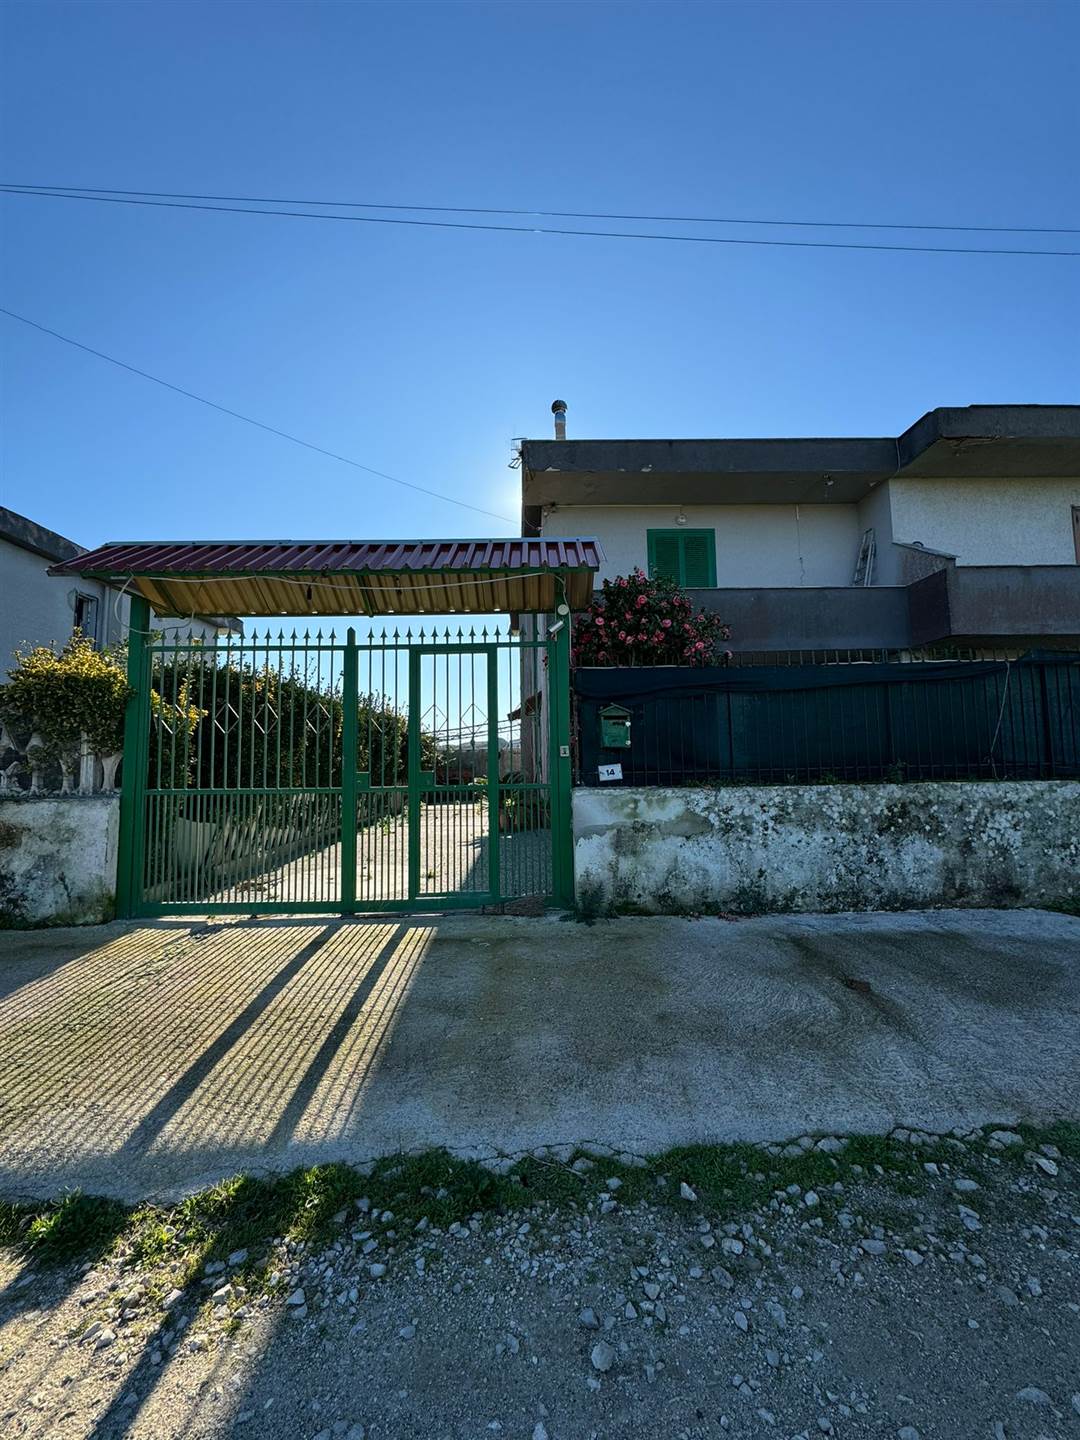 Villa in vendita a Castel Volturno, 4 locali, zona Località: DOMIZIANA DA SCATOZZA A PINETAMARE, prezzo € 50.000 | PortaleAgenzieImmobiliari.it